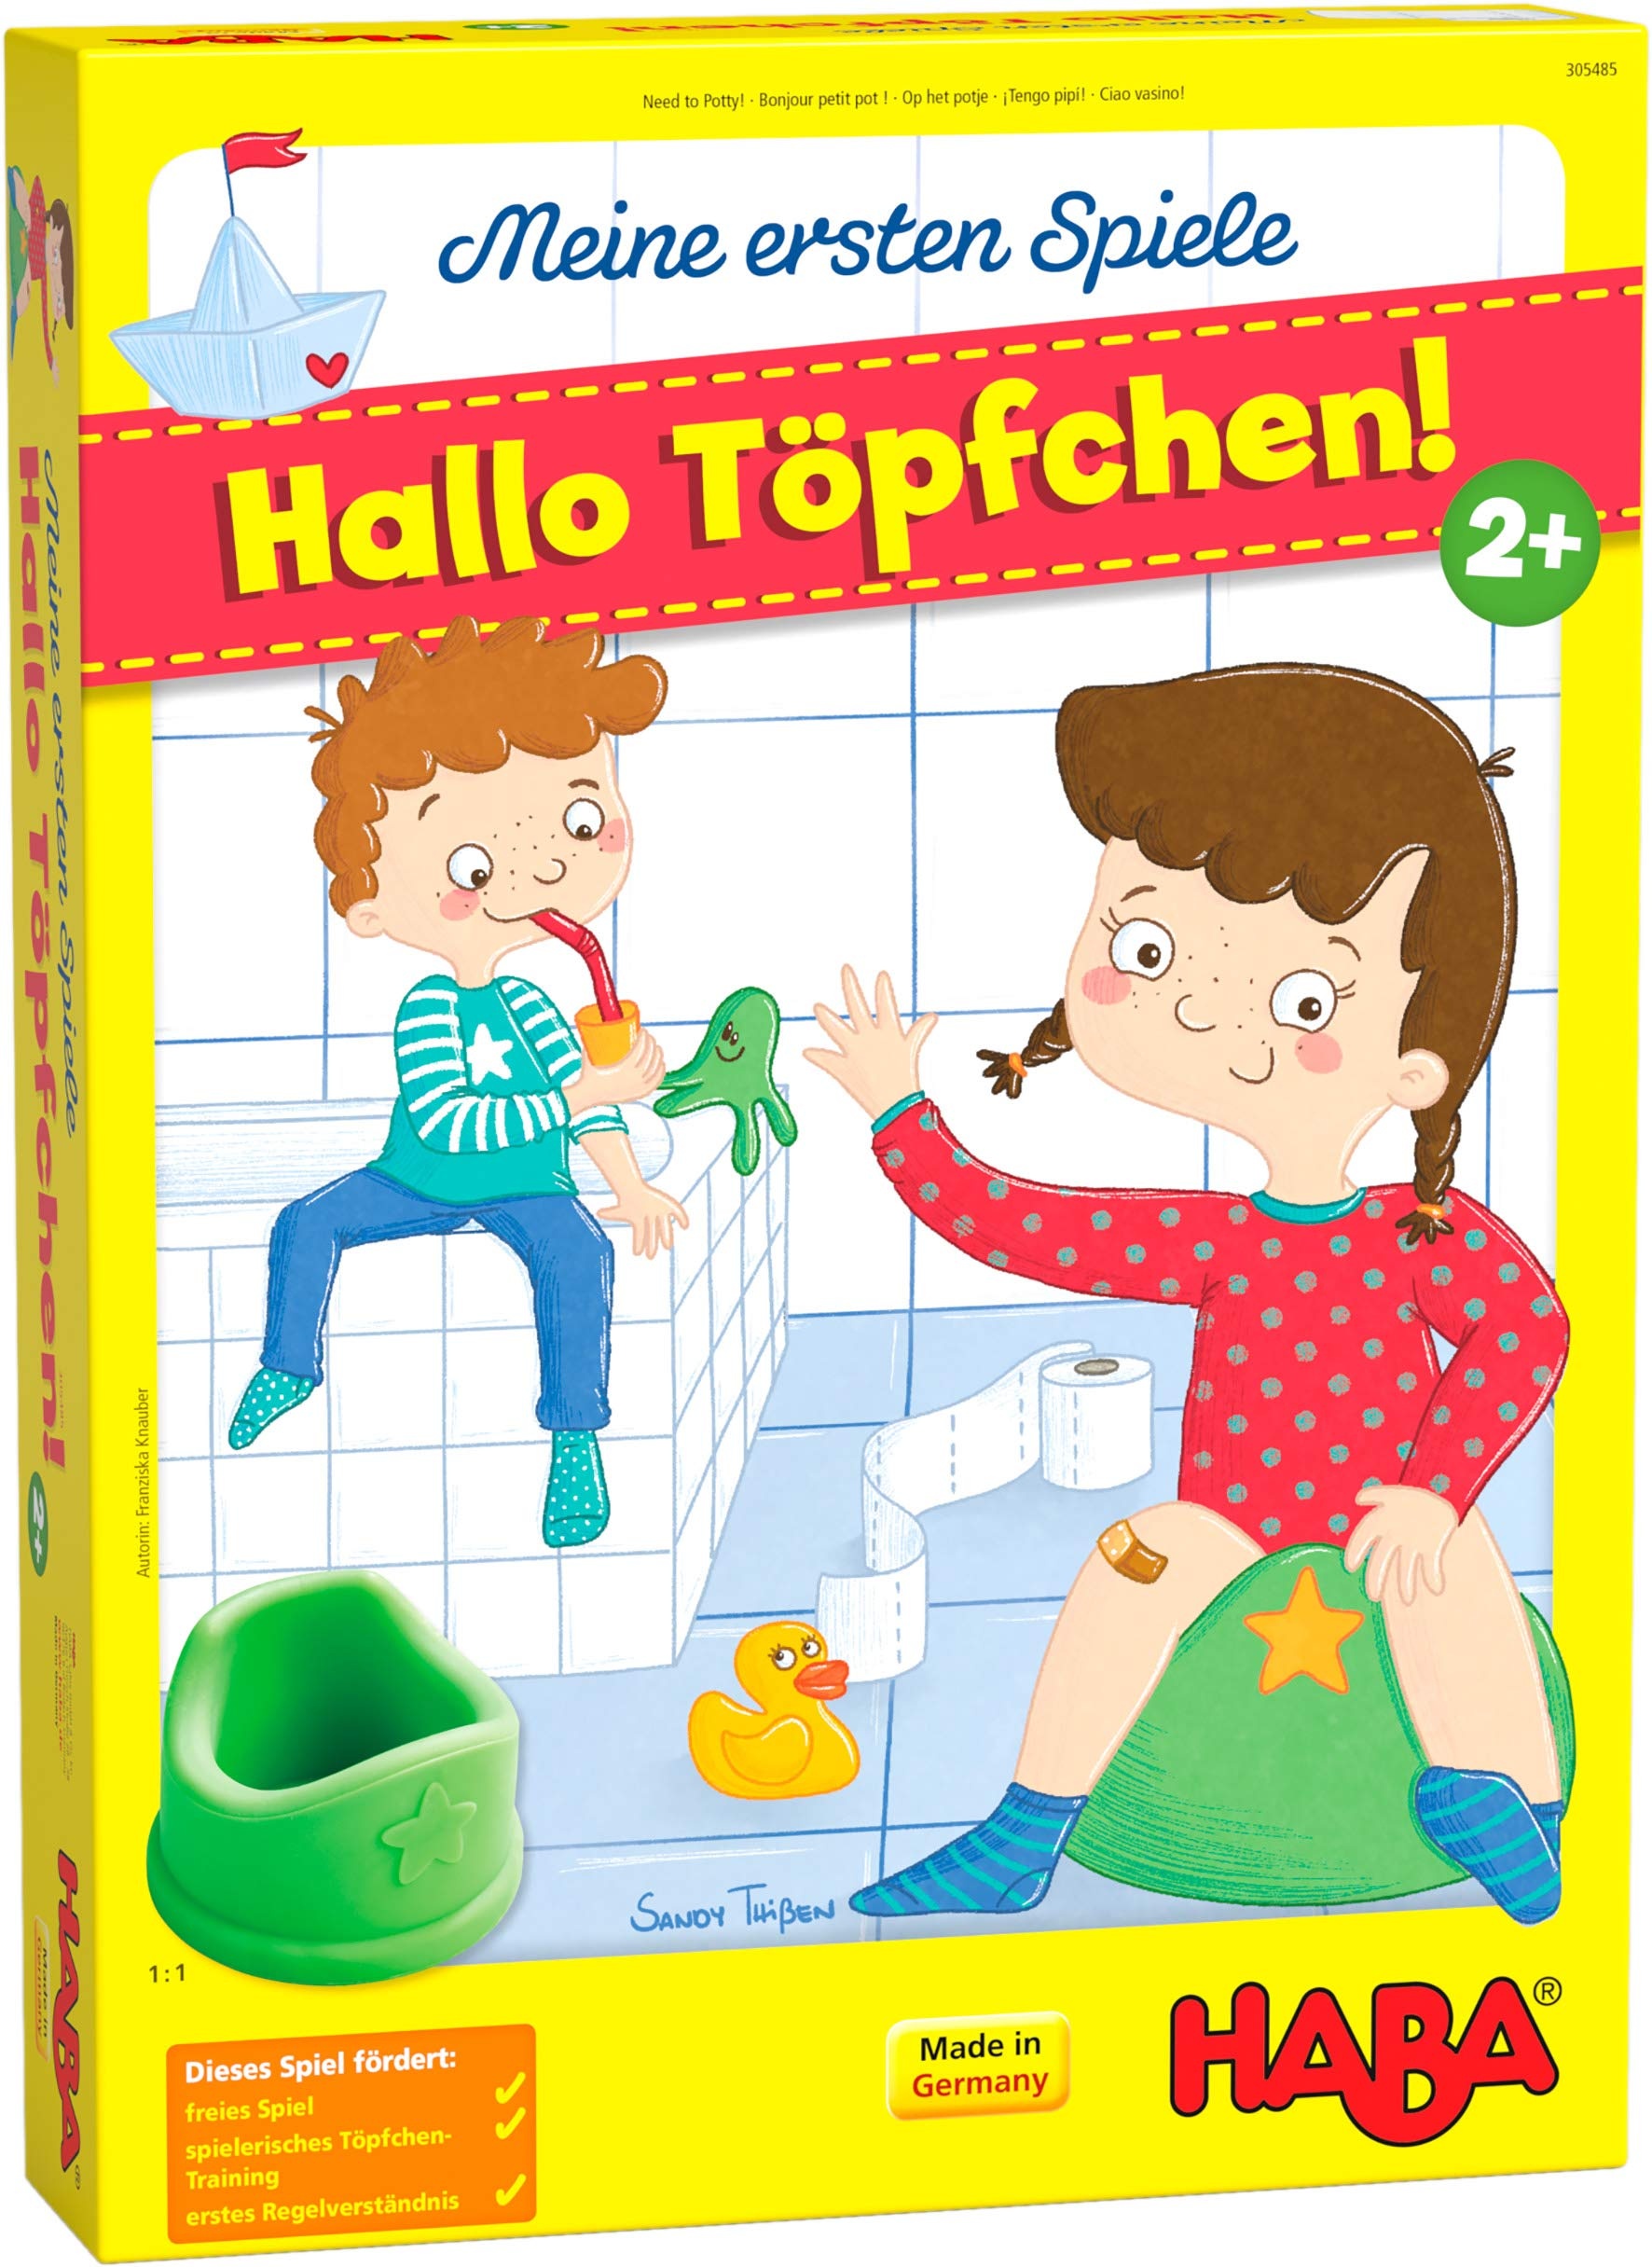 HABA 305485 - Meine ersten Spiele – Hallo Töpfchen! – kooperatives Würfelspiel für 1-4 Spieler ab 2 Jahren, 3D-Spielkulisse mit 2 Motiven für Jungs und Mädchen